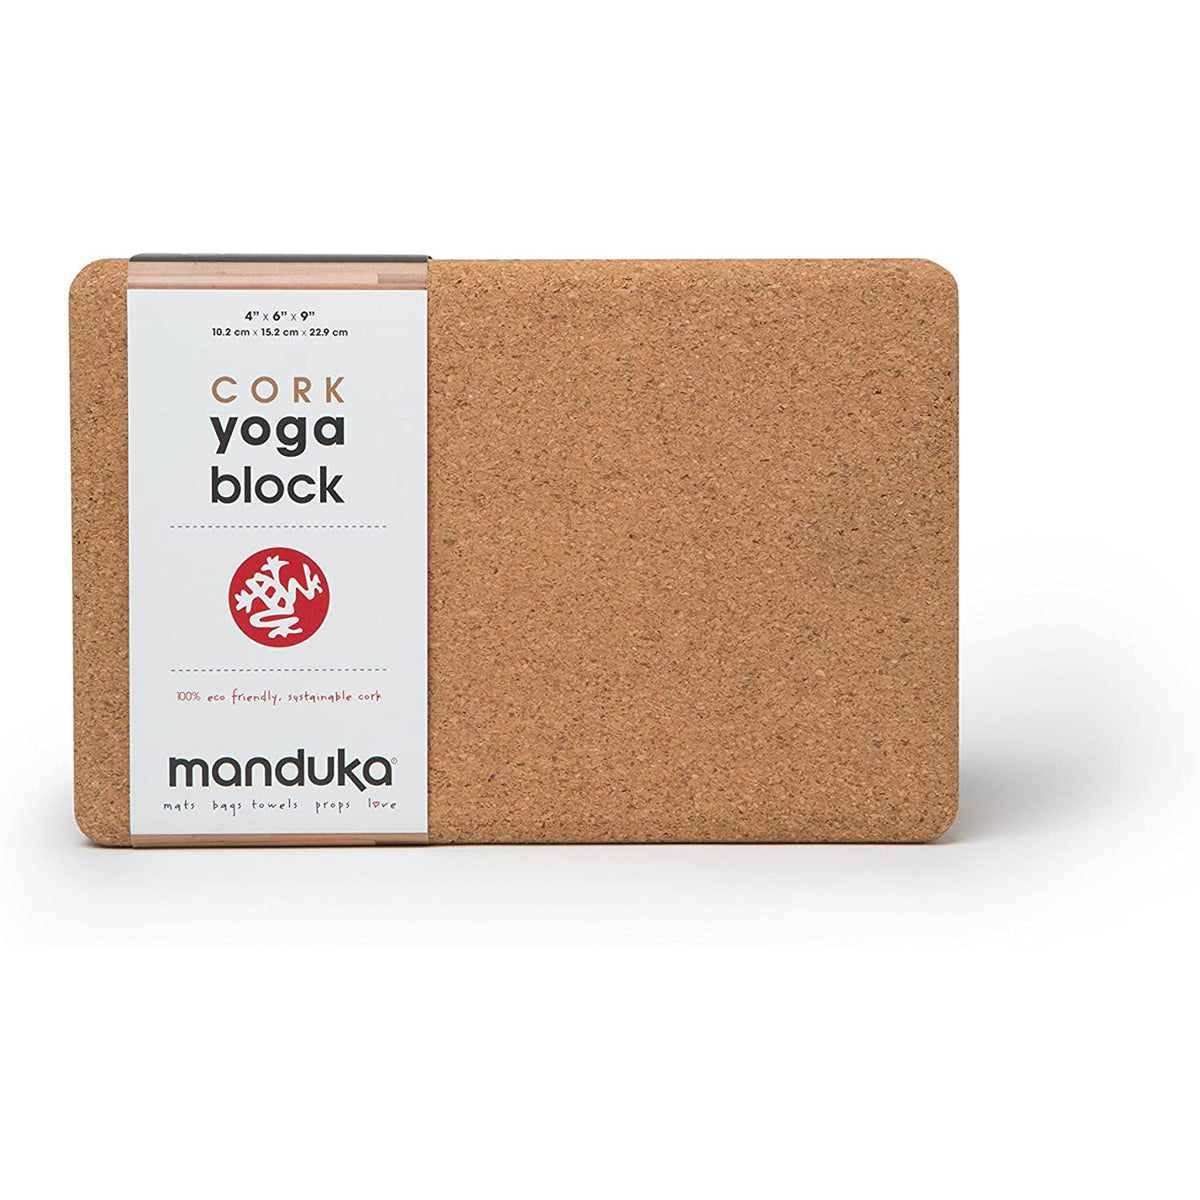 Manduka Yoga Cork Block